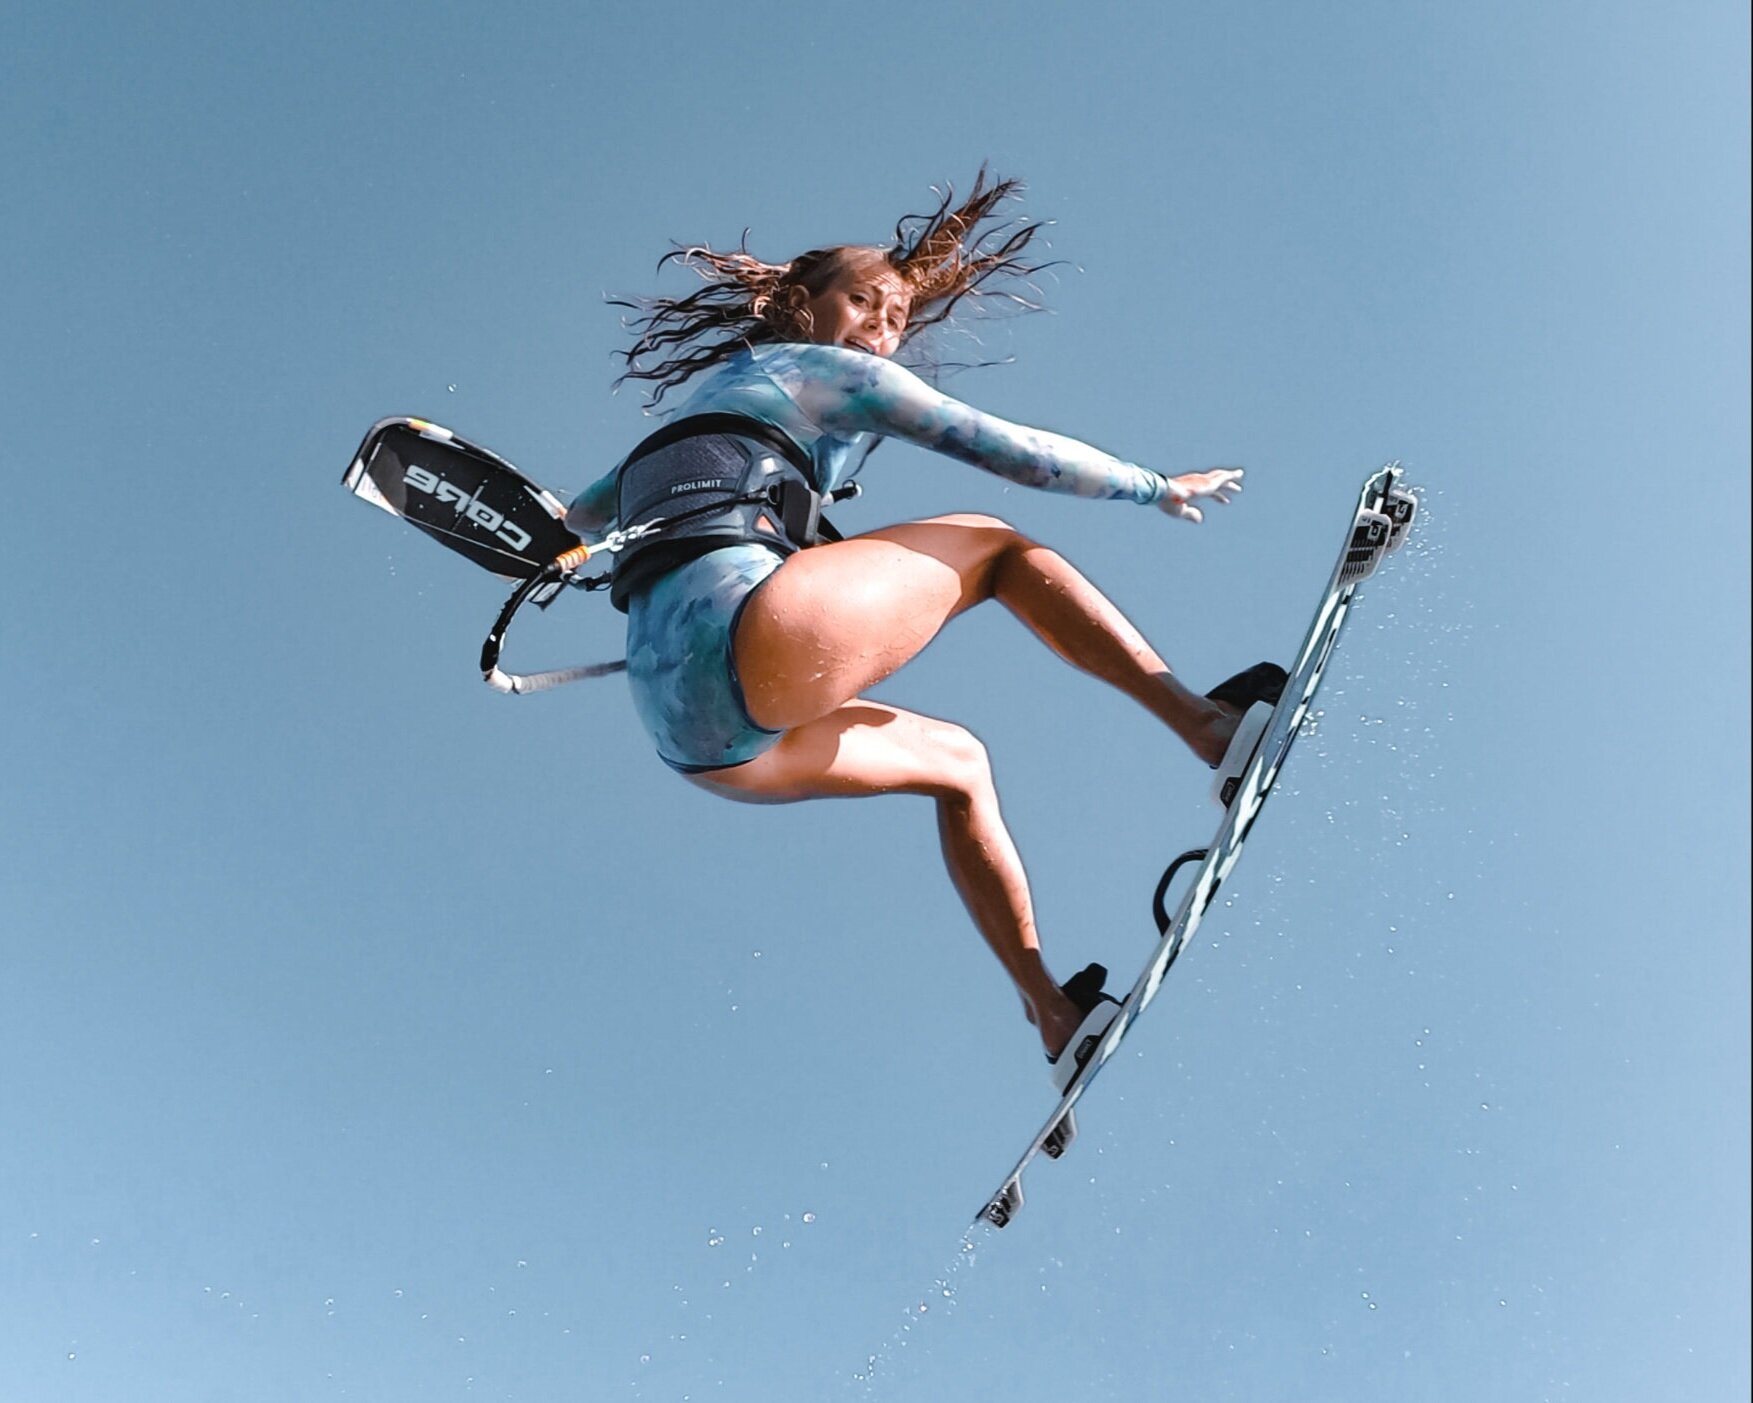 Kitesurfer springt über GoPro-Fotograf